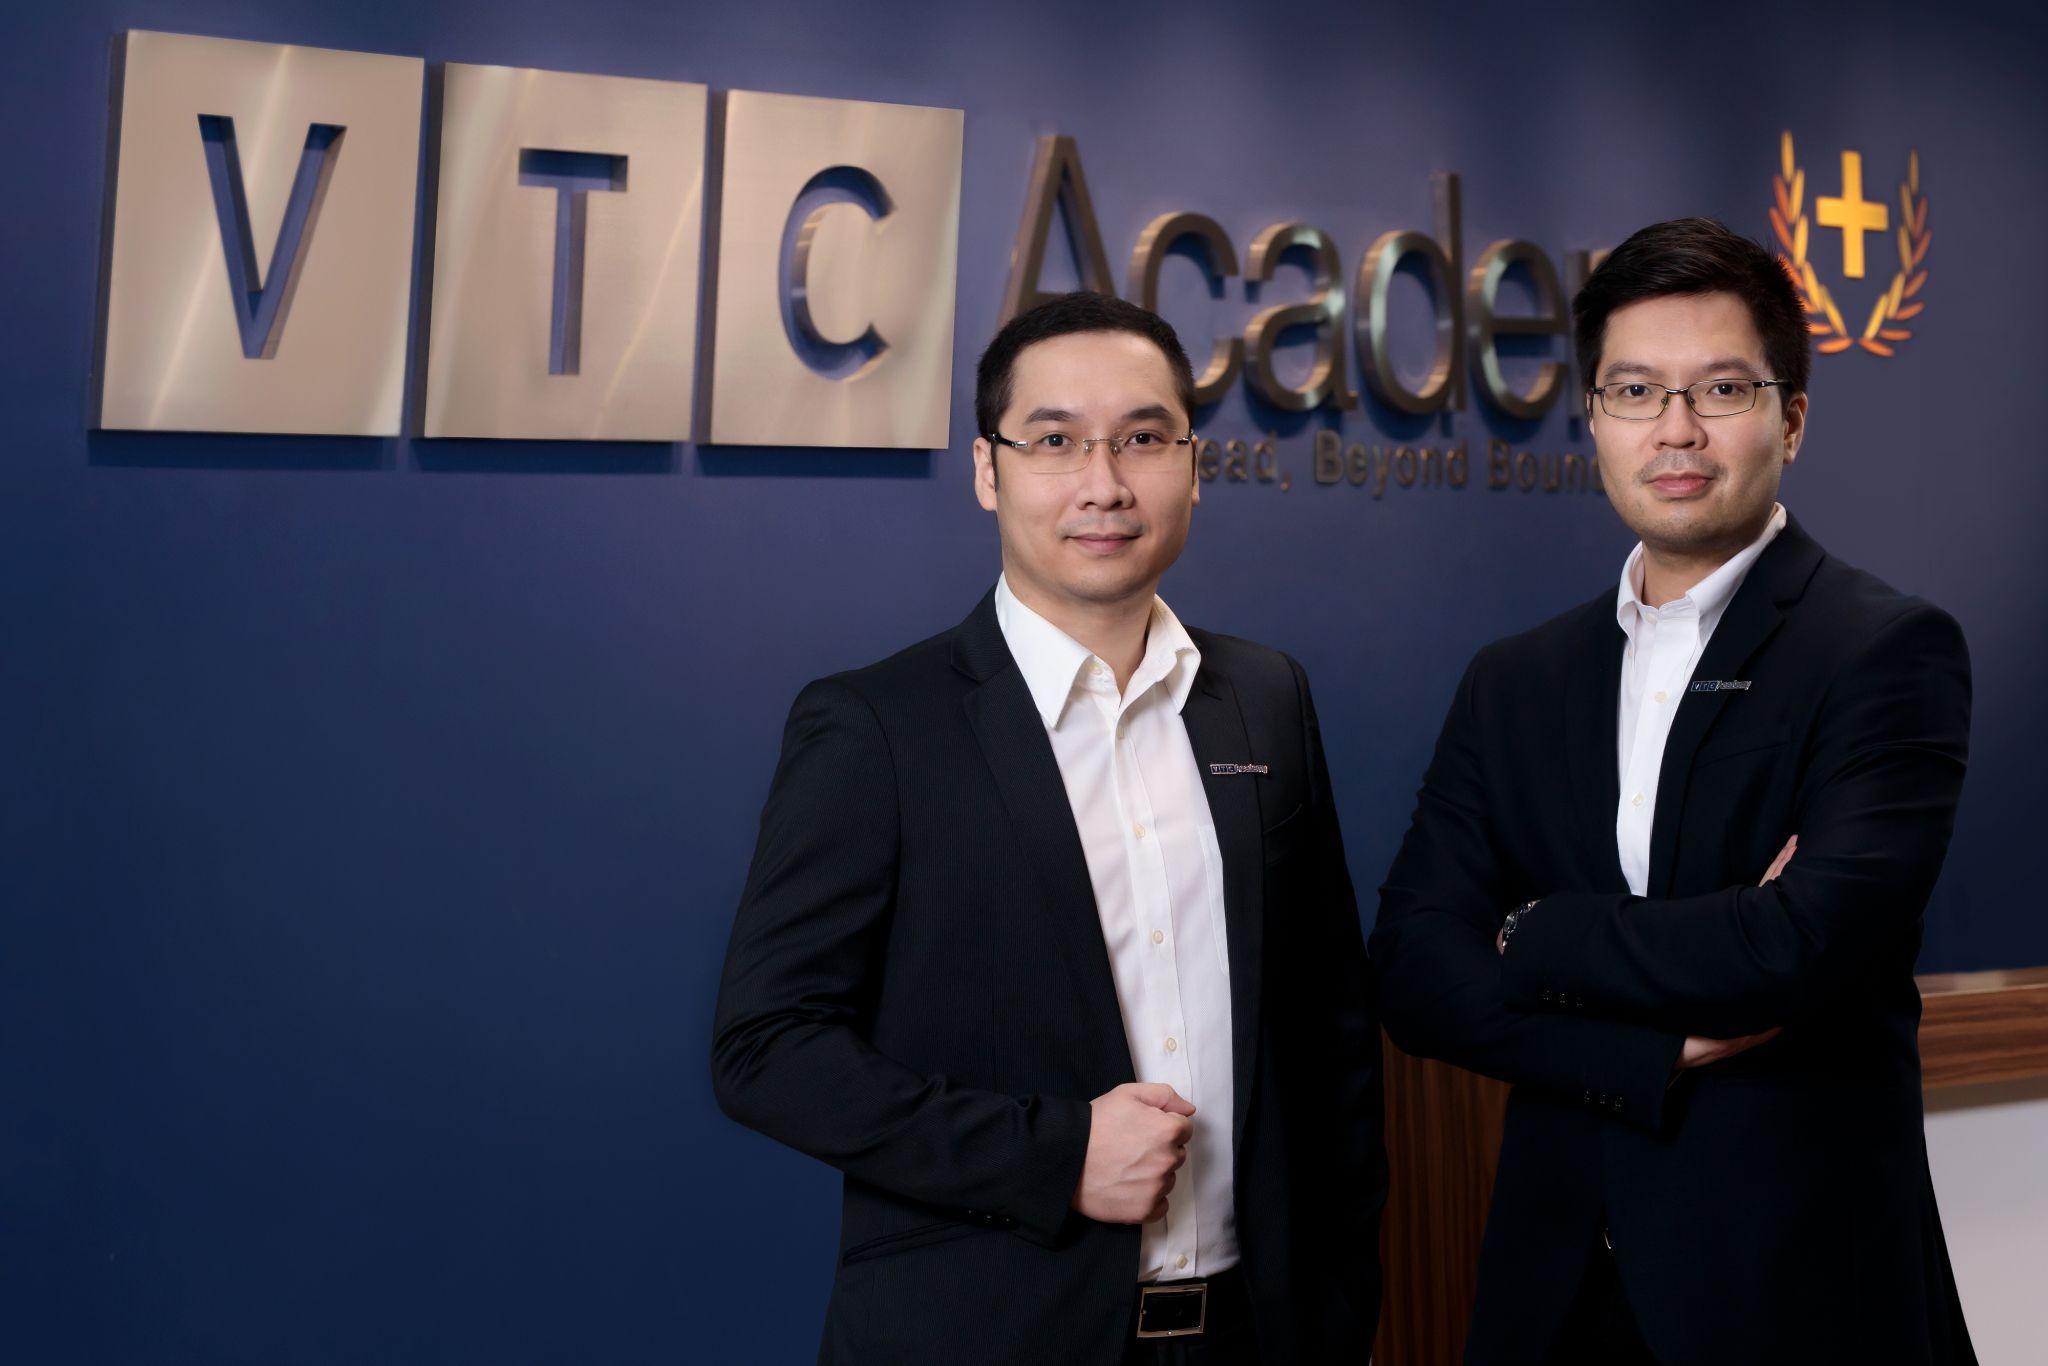 Ông Hoàng Việt Tùng (trái) - Chủ tịch HĐQT VTC Academy và ông Hoàng Việt Tân (phải) - Tổng Giám đốc điều hành VTC Academy